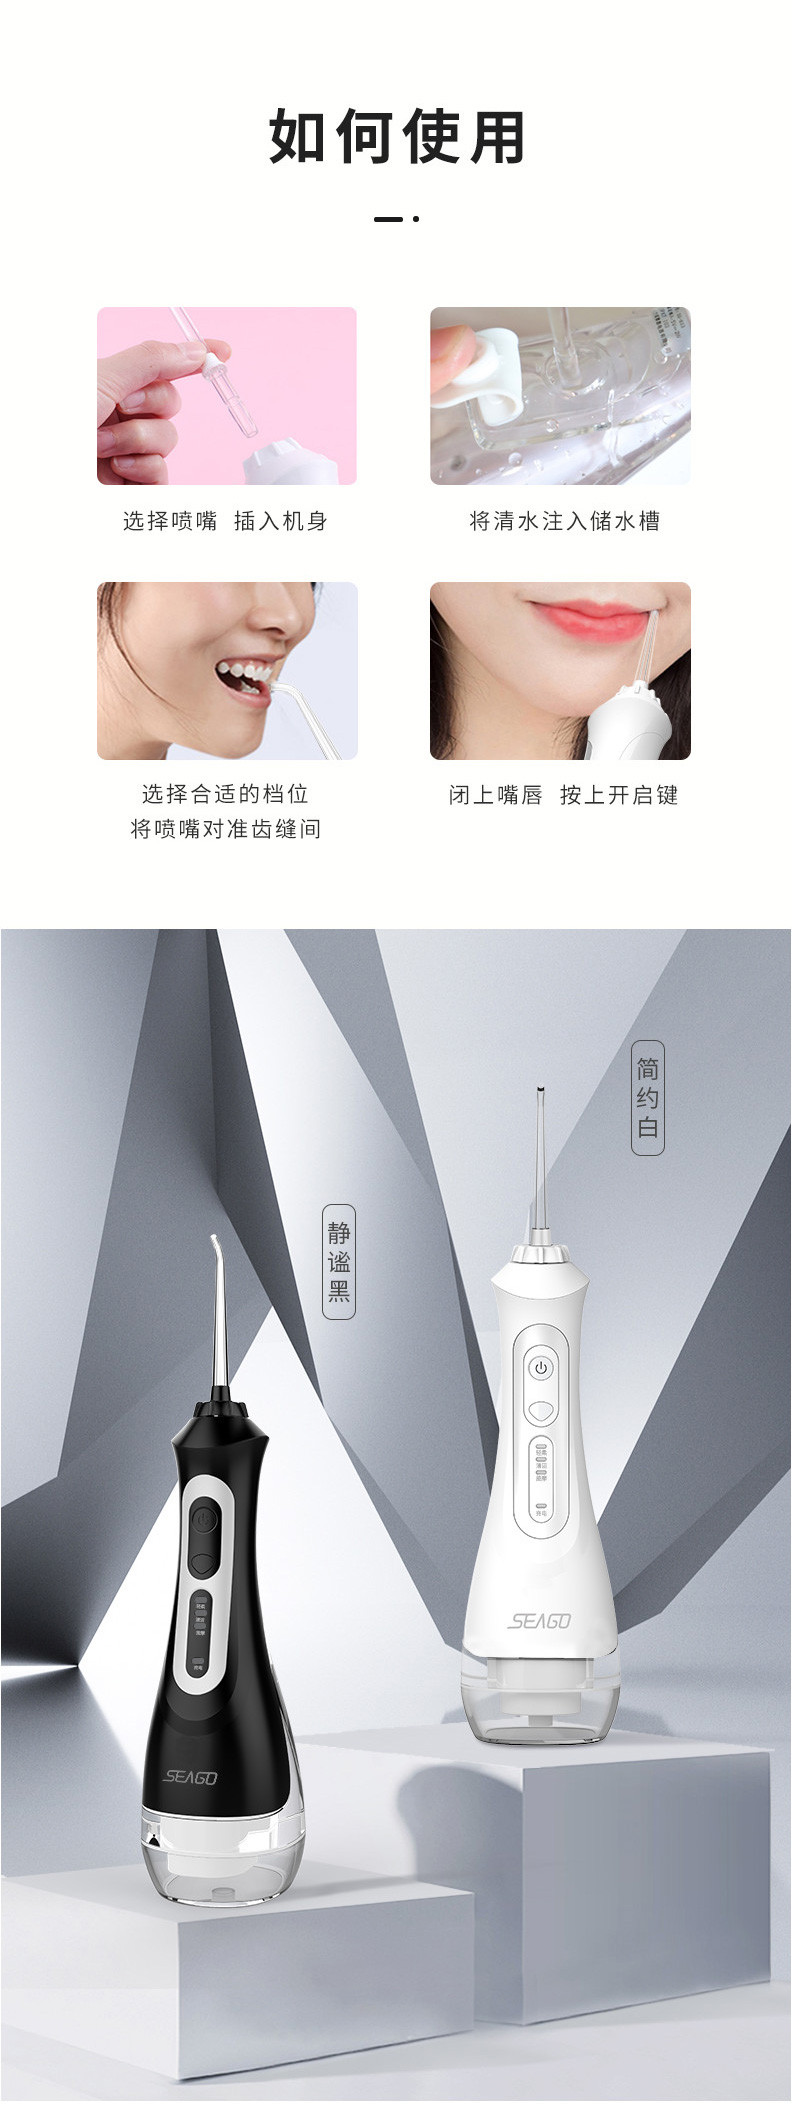 赛嘉 电动冲牙器 便携式牙齿正畸水牙线清洁洗牙器 SG-833